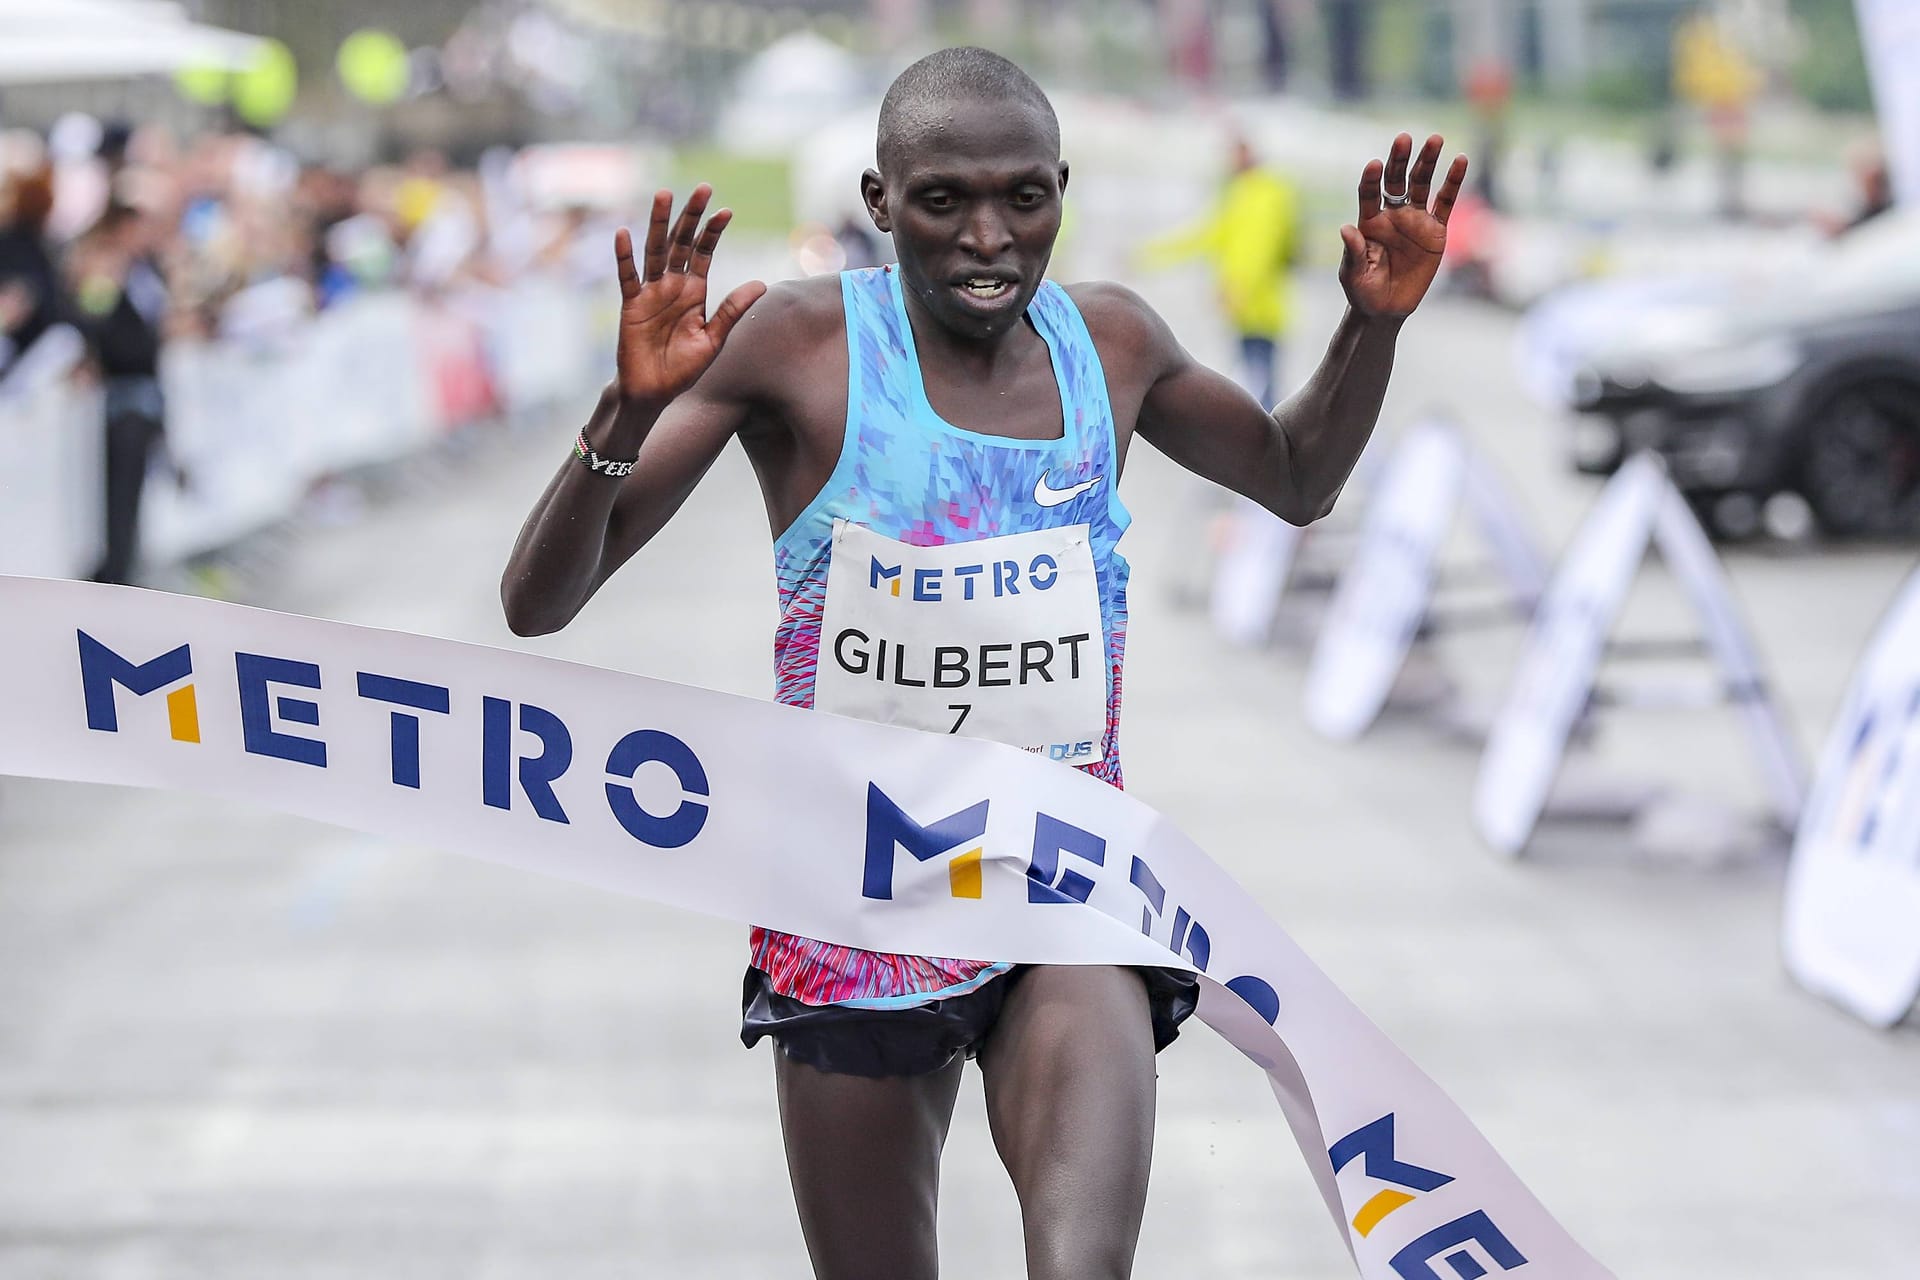 Für rund 43 Kilometer brauchte der Kenianer Gilbert Yegon 2 Stunden, 13 Minuten und 54 Sekunden.